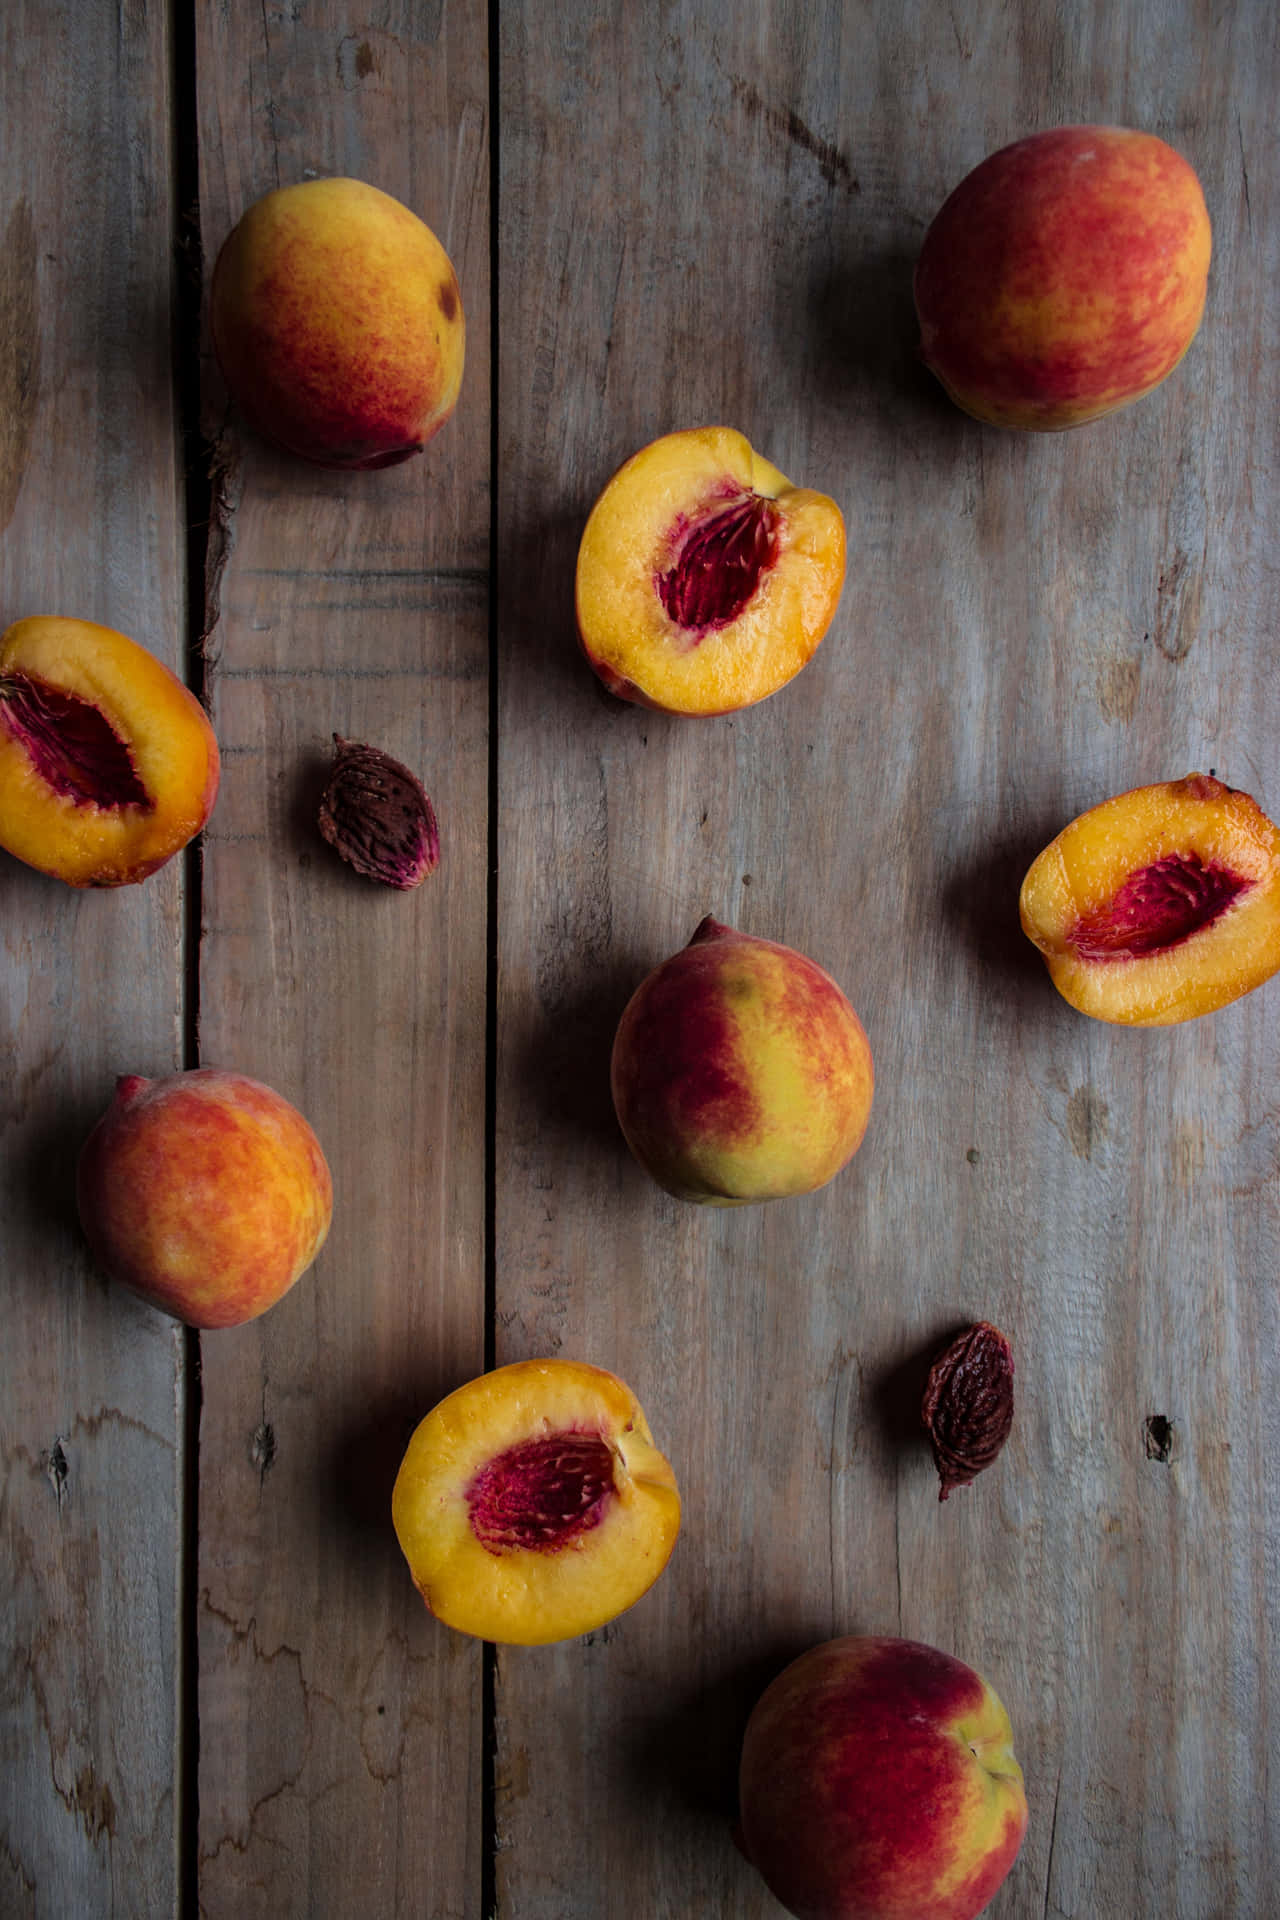 Peaches in their natural environment.